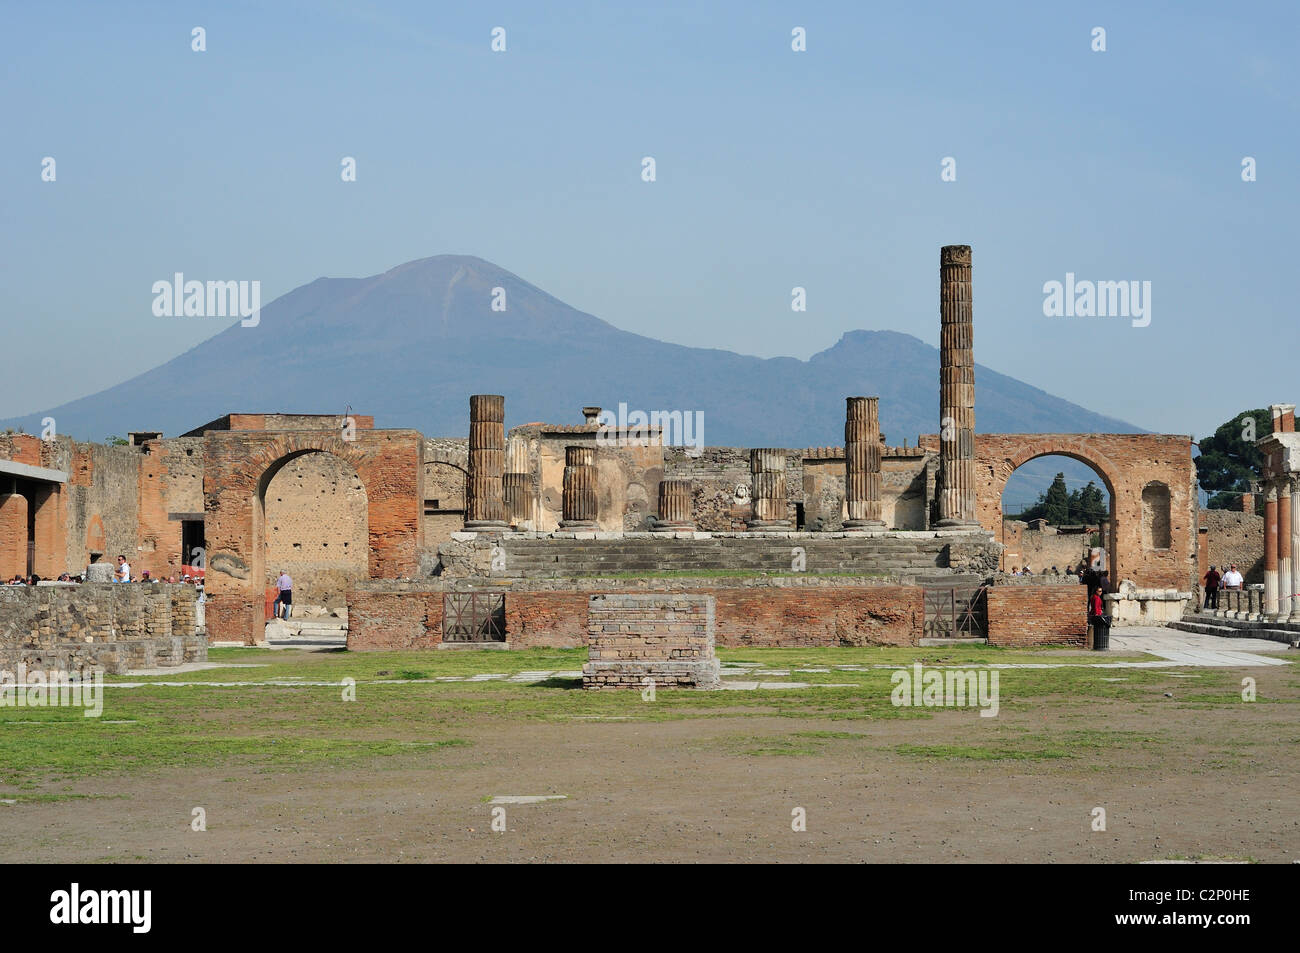 Pompei. Italia. Las antiguas ruinas del Foro de Pompeya con el Monte Vesubio en el fondo, el sitio arqueológico de Pompeya. Foto de stock